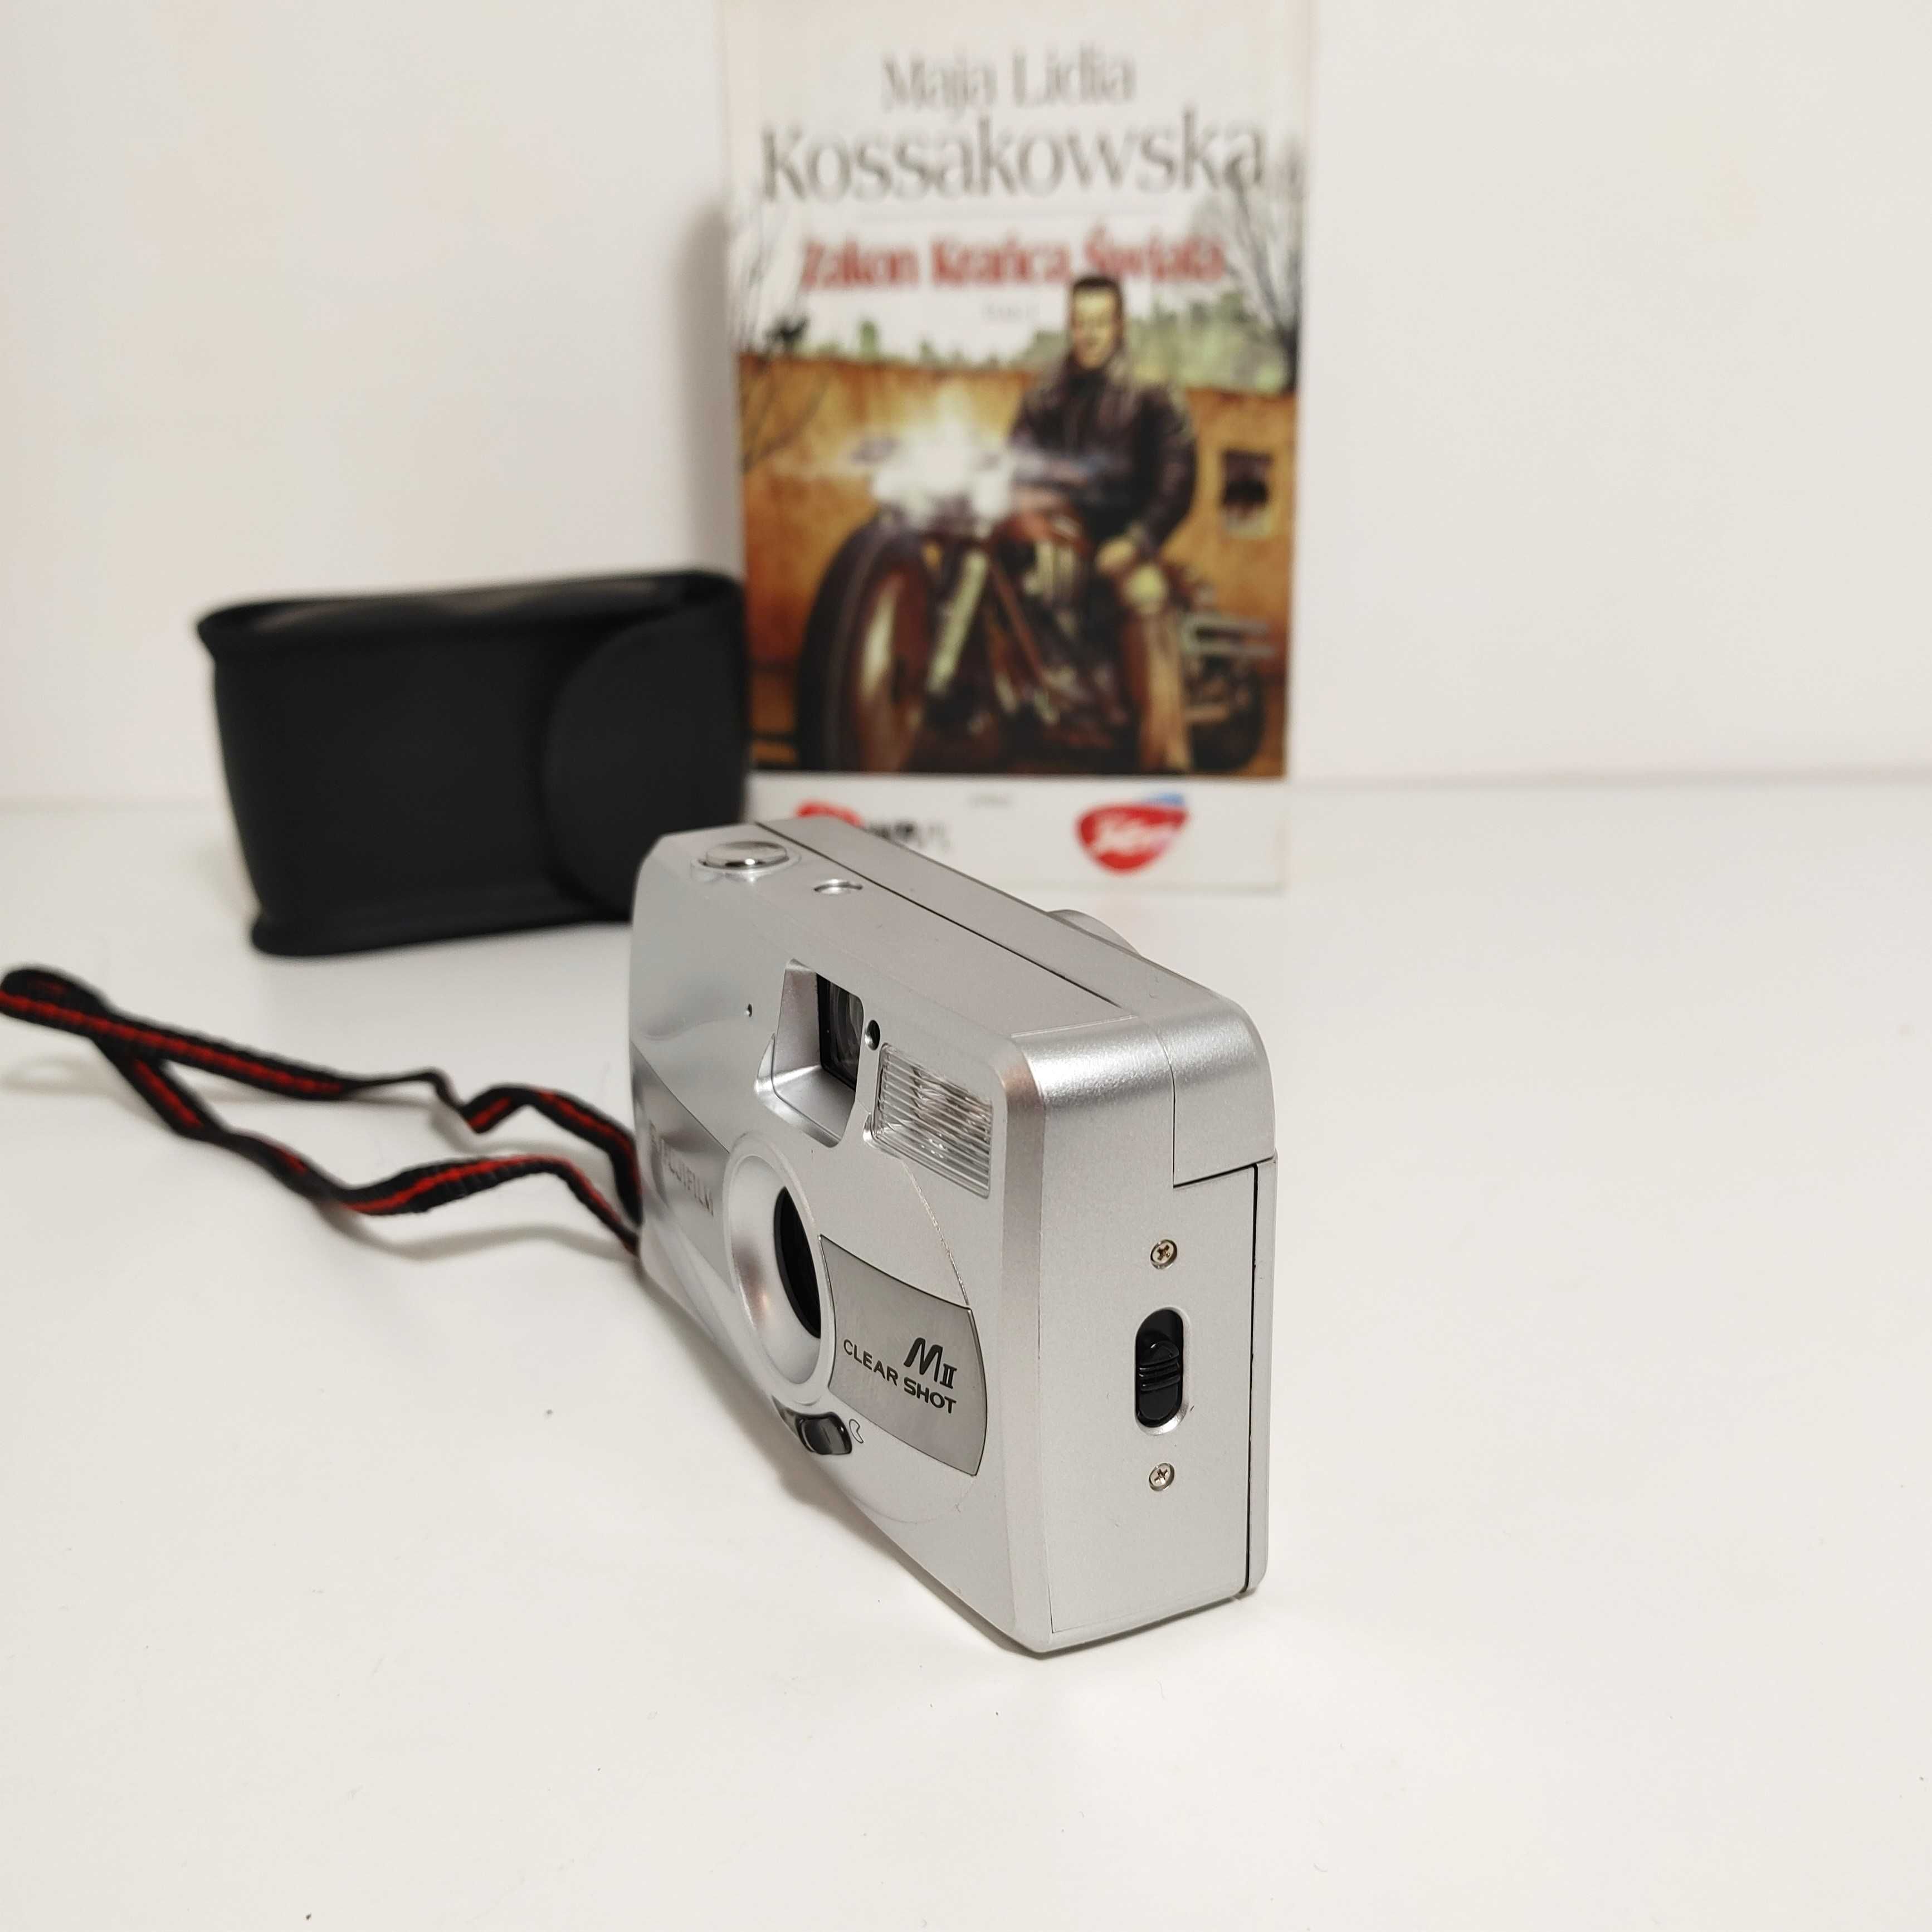 Wyjątkowy analogowy aparat fotograficzny FujiFilm Clear Shot MII